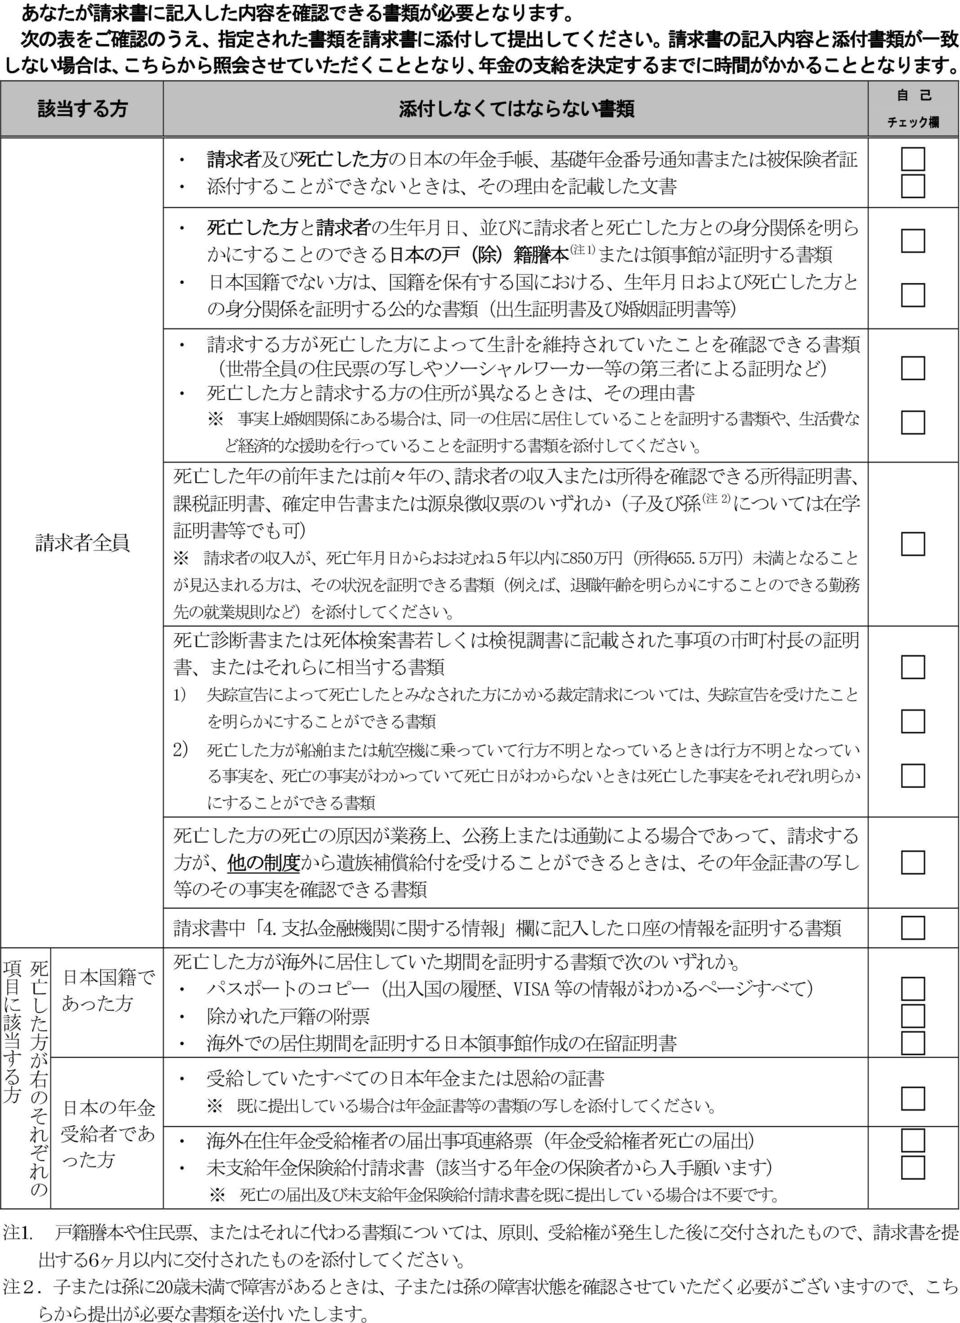 分 関 係 を 明 ら かにすることのできる 日 本 の 戸 ( 除 ) 籍 謄 本 ( 注 1) または 領 事 館 が 証 明 する 書 類 日 本 国 籍 でない 方 は 国 籍 を 保 有 する 国 における および 死 亡 した 方 と の 身 分 関 係 を 証 明 する 公 的 な 書 類 ( 出 生 証 明 書 及 び 婚 姻 証 明 書 等 ) 請 求 する 方 が 死 亡